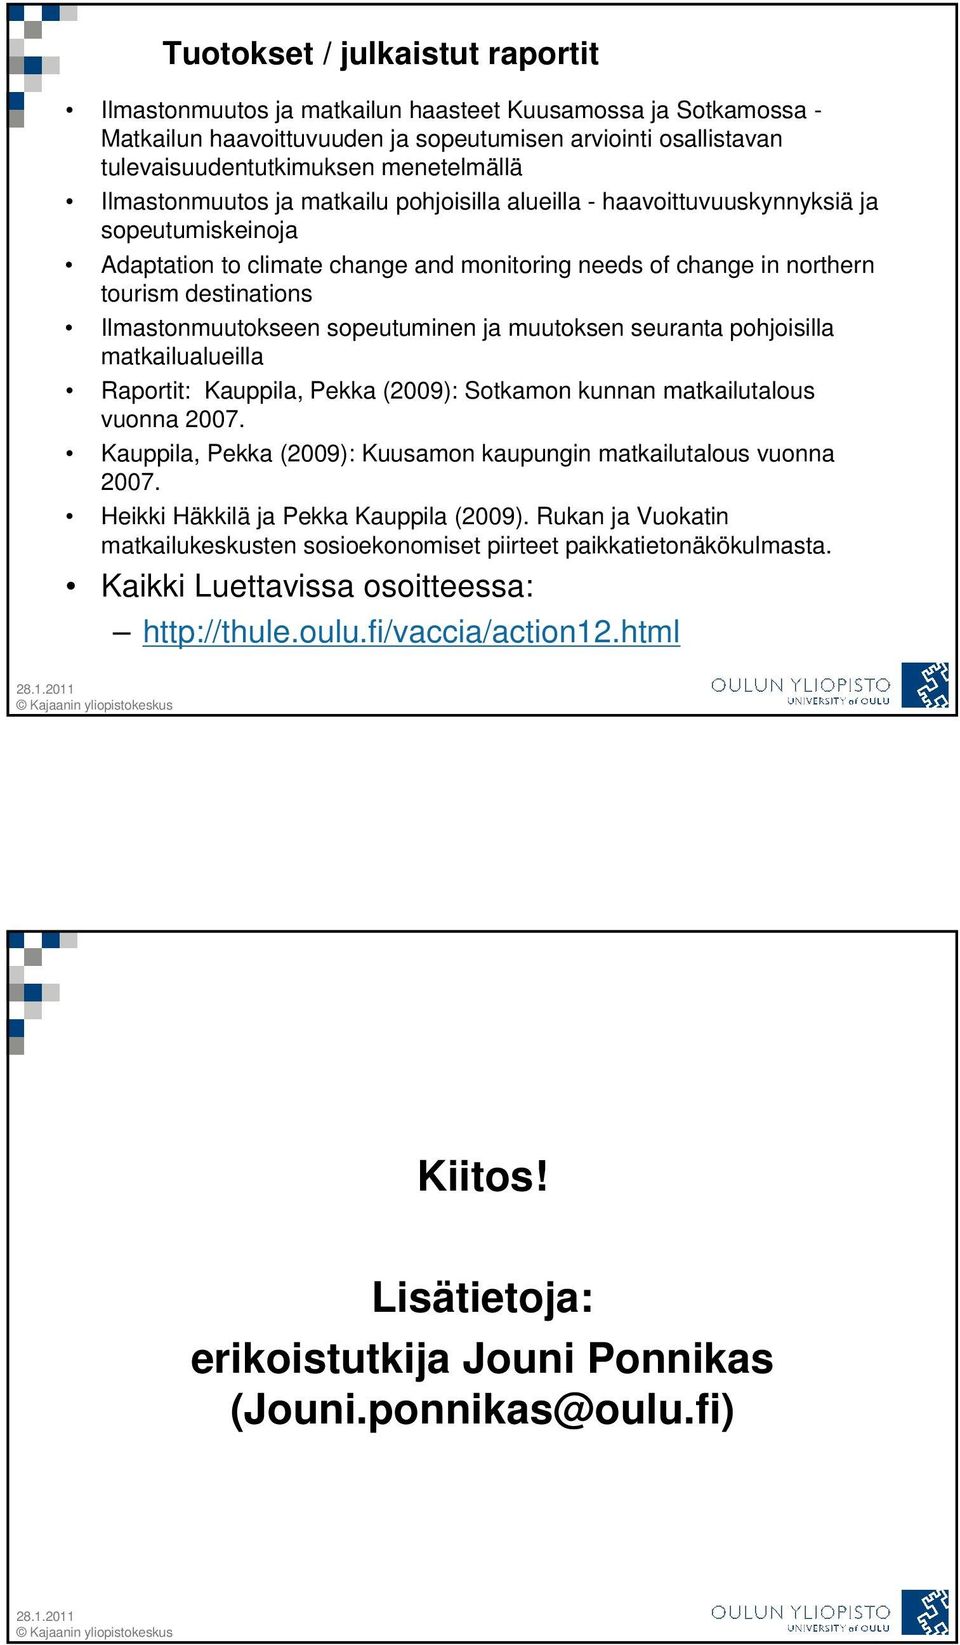 Ilmastonmuutokseen sopeutuminen ja muutoksen seuranta pohjoisilla matkailualueilla Raportit: Kauppila, Pekka (2009): Sotkamon kunnan matkailutalous vuonna 2007.